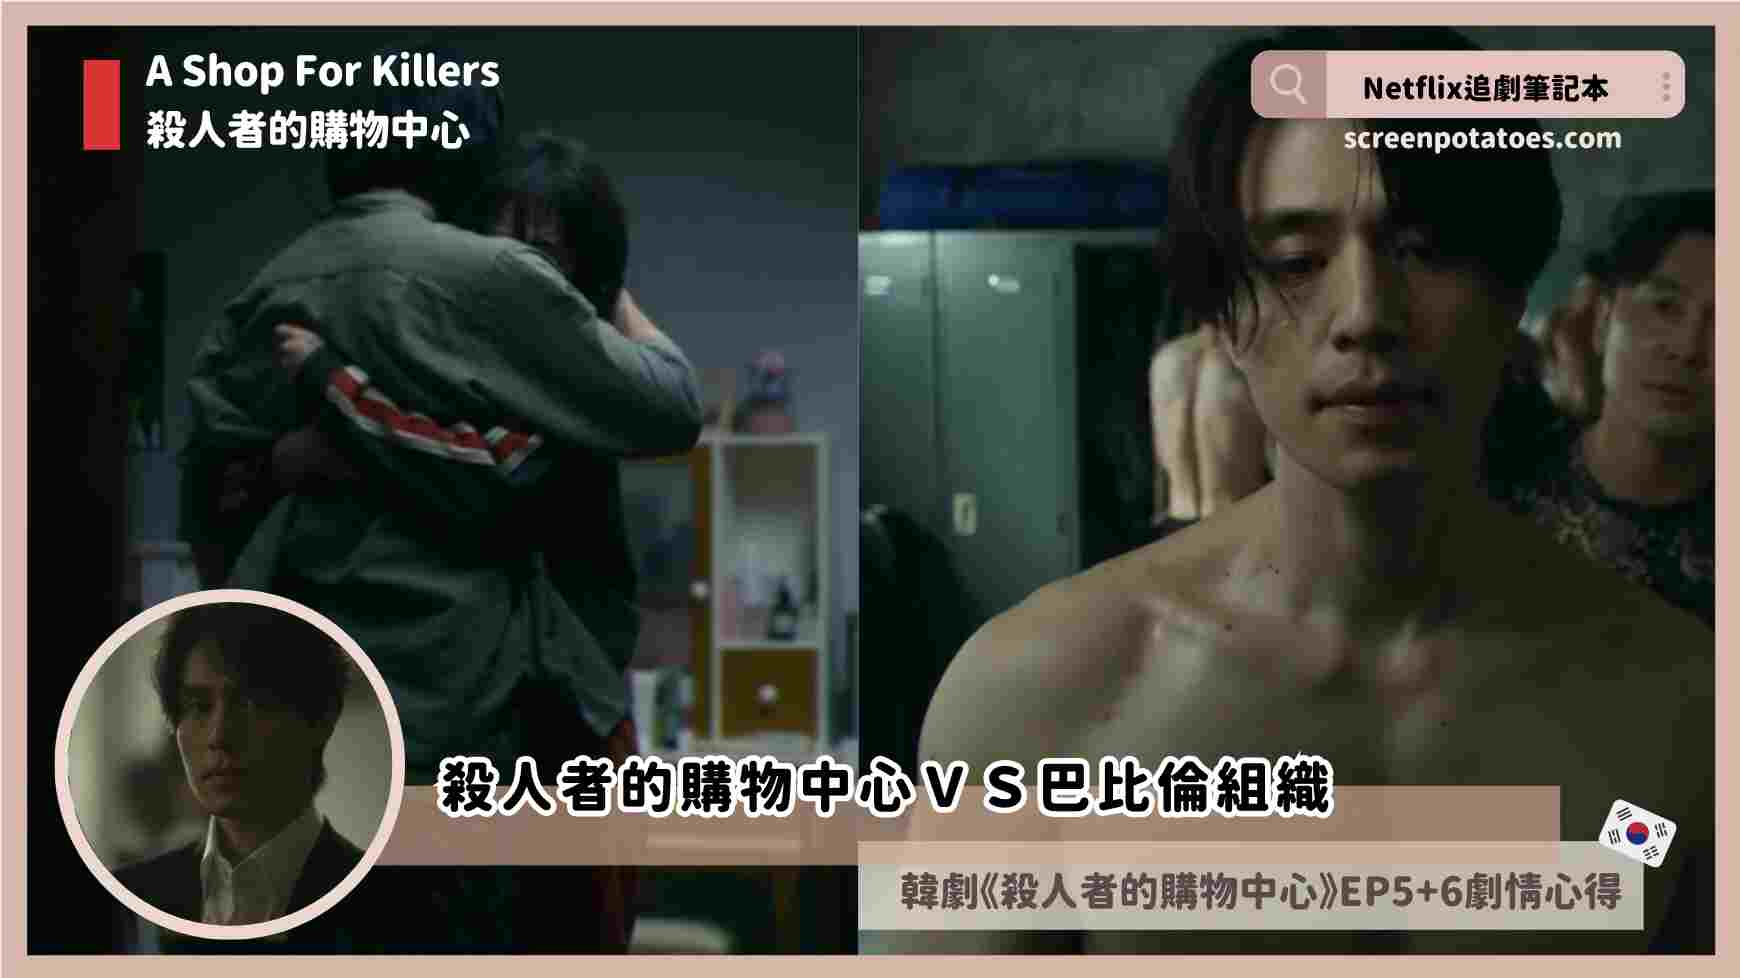 第5+6集韓劇《殺人者的購物中心》劇情與評價心得